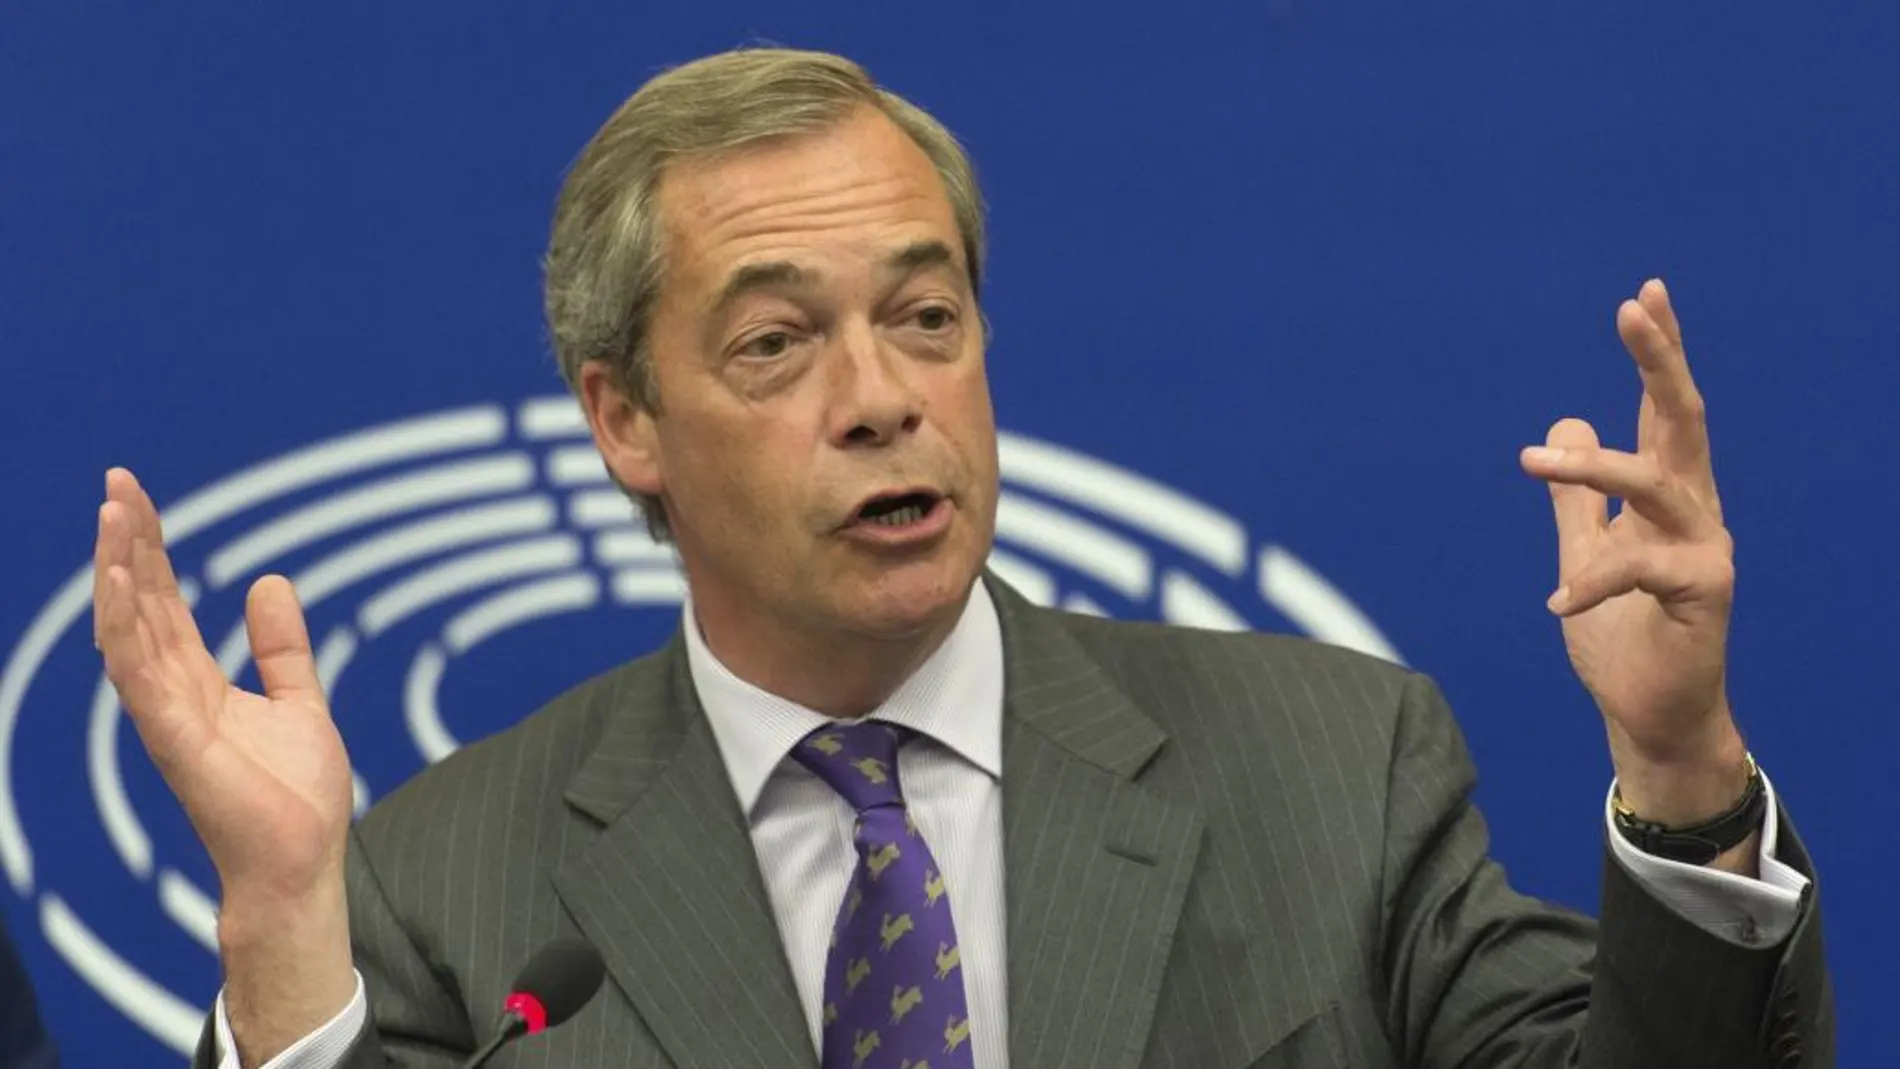 El eurodiputado y líder del Partido de la Independencia de Reino Unido (UKIP), Nigel Farage